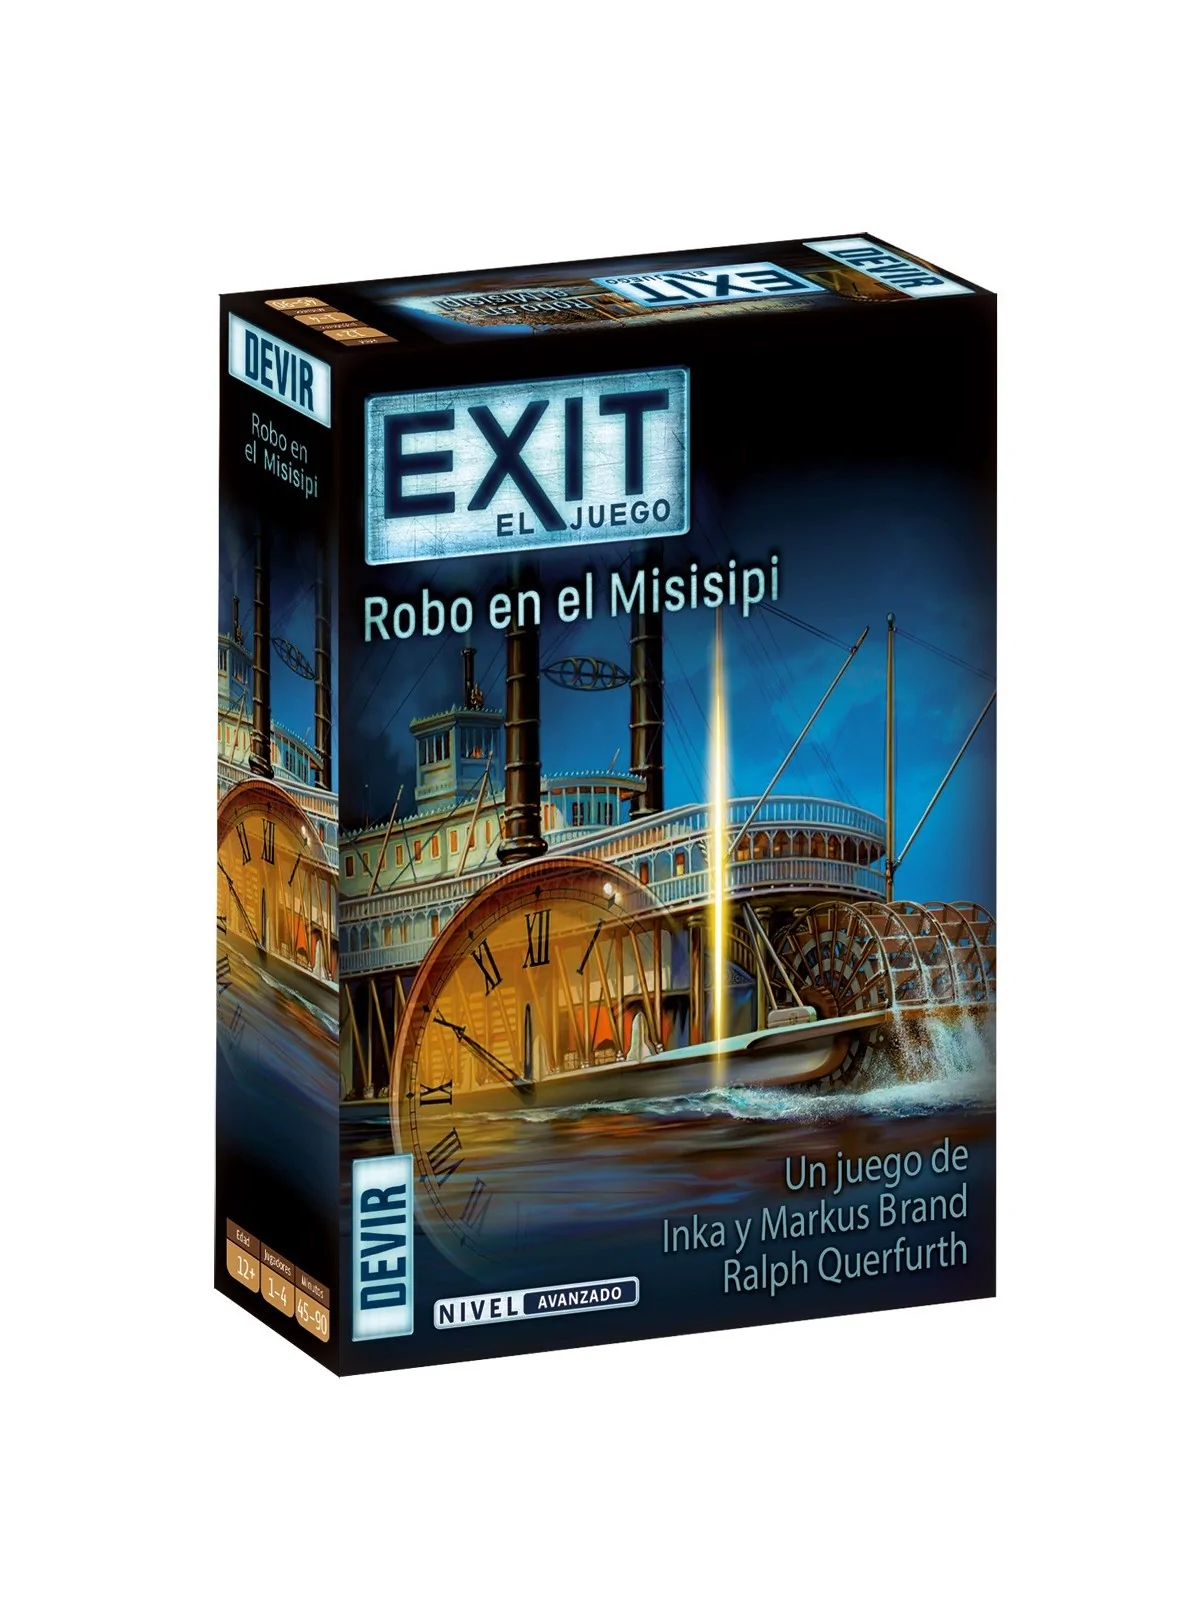 Comprar Exit: Robo en el Misisipi barato al mejor precio 14,44 € de De